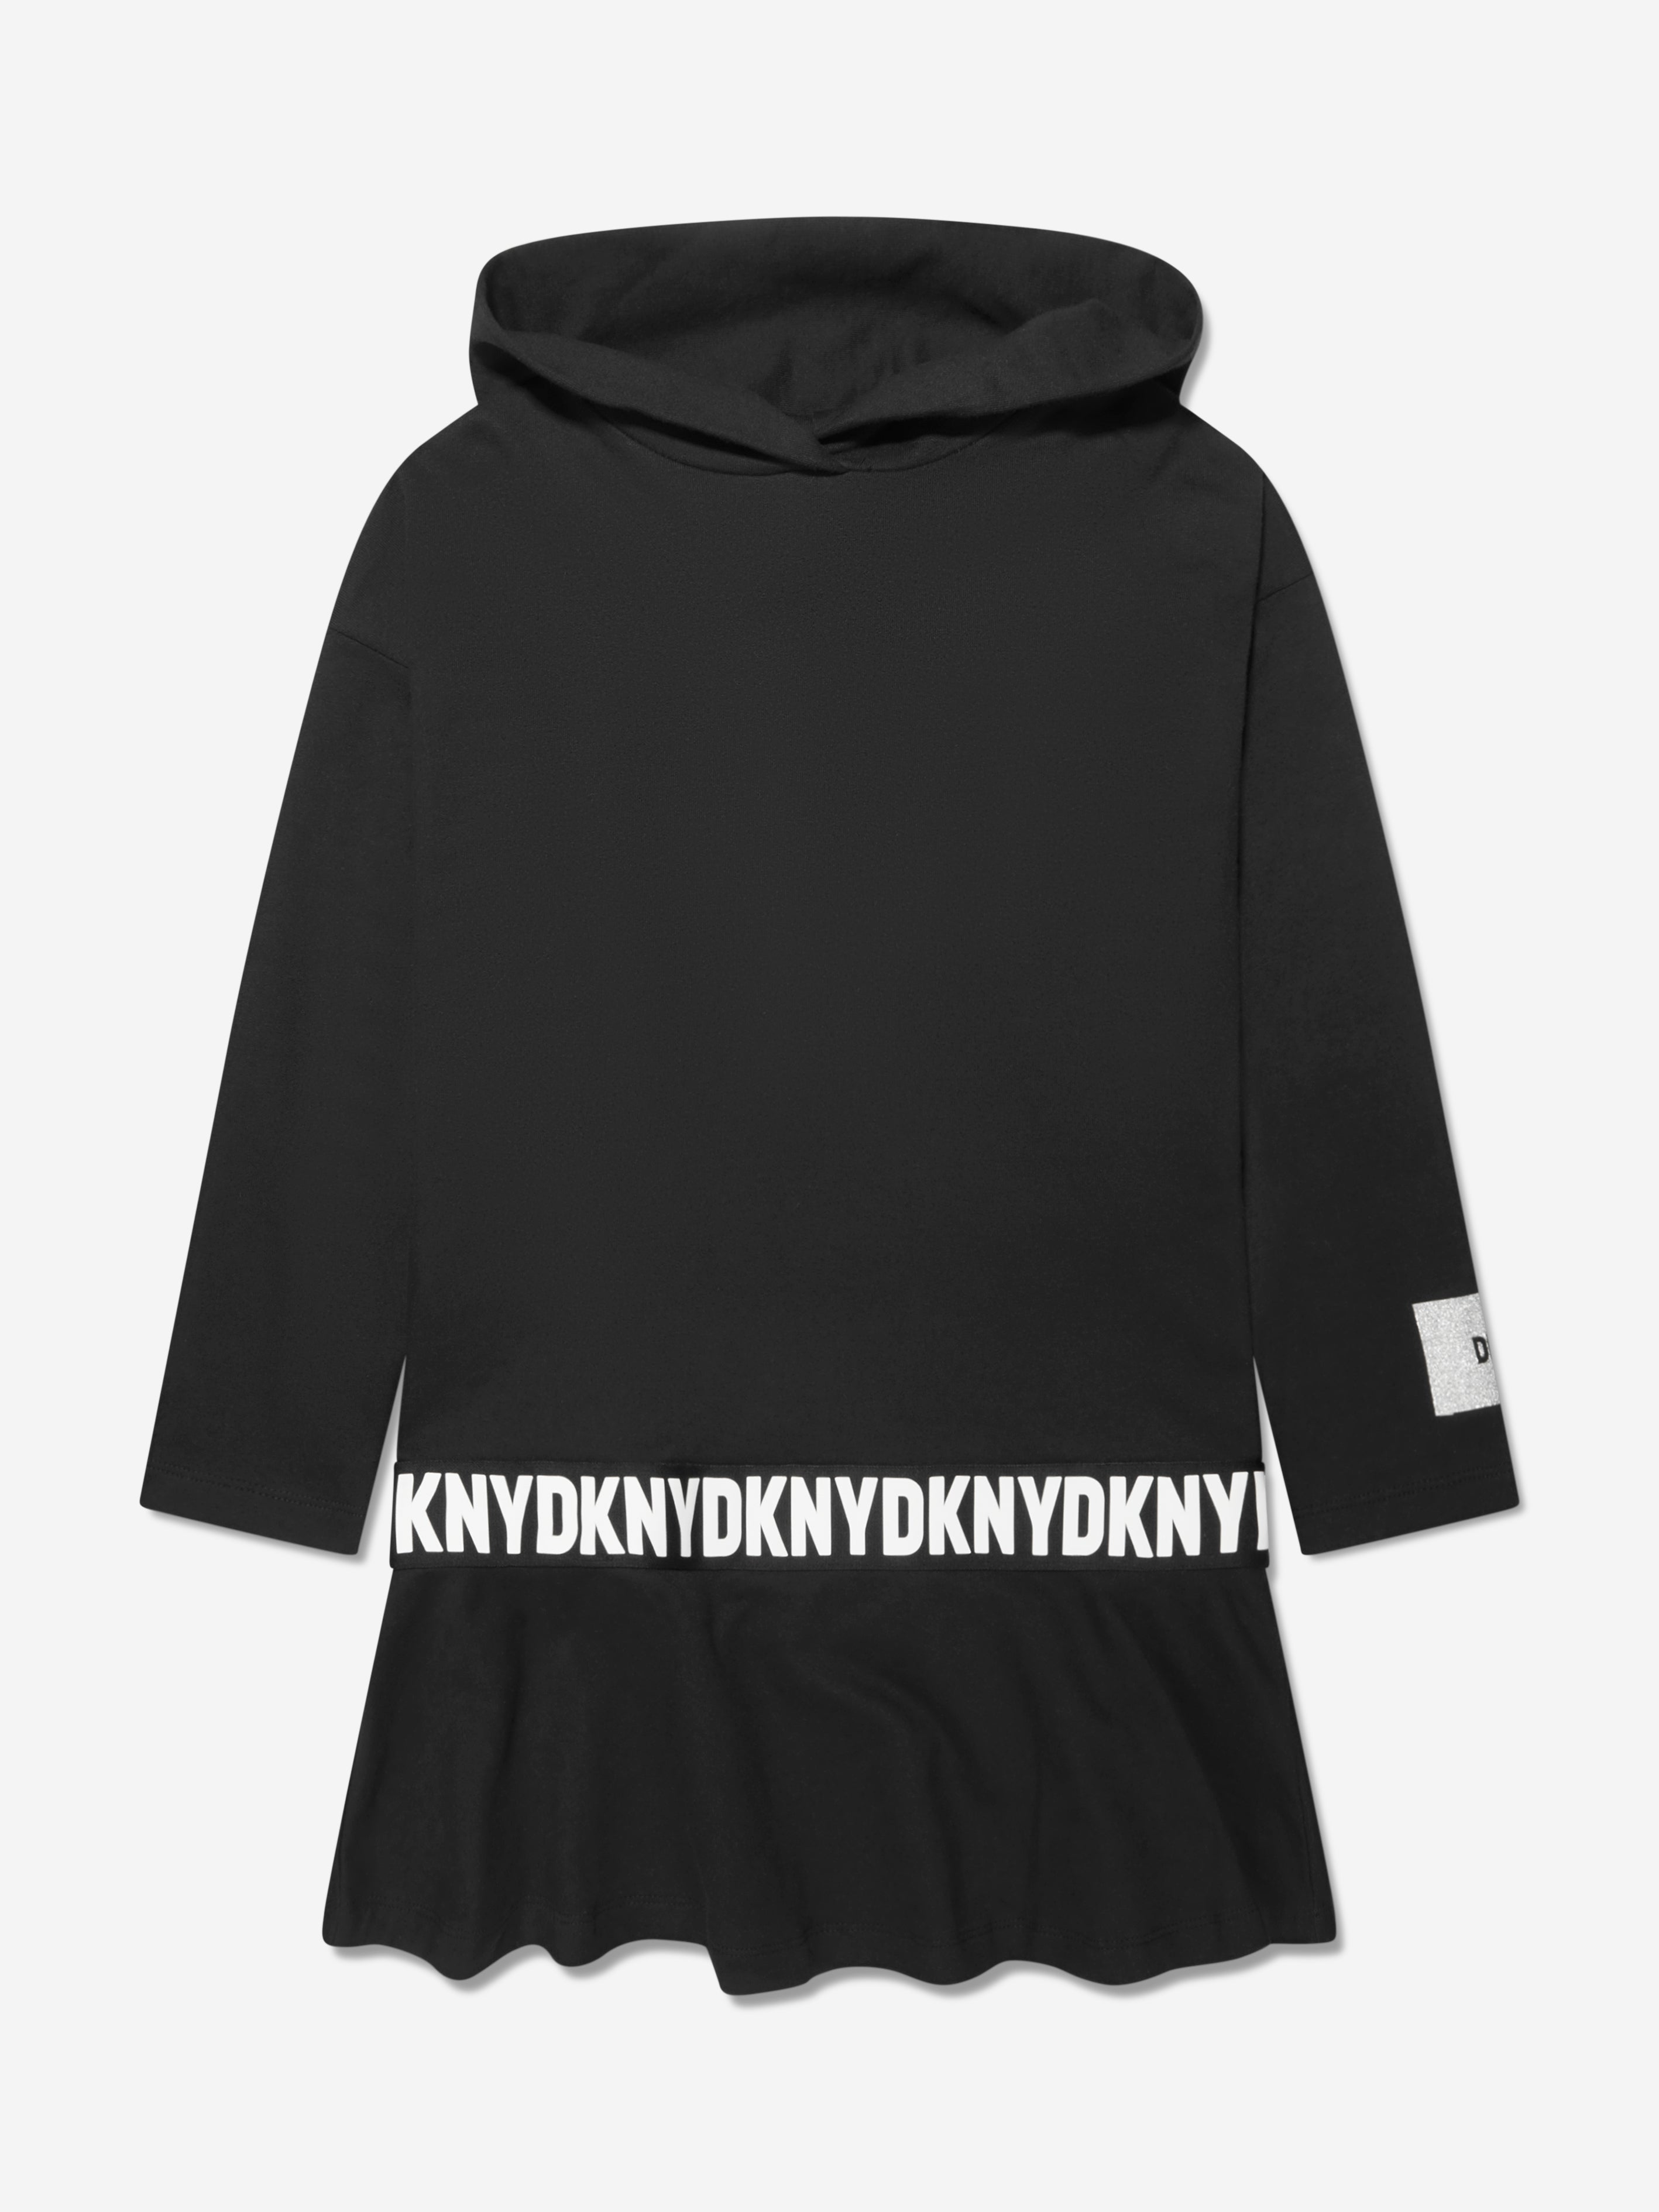 Dkny Kids' Girls Hooded Dress In Black